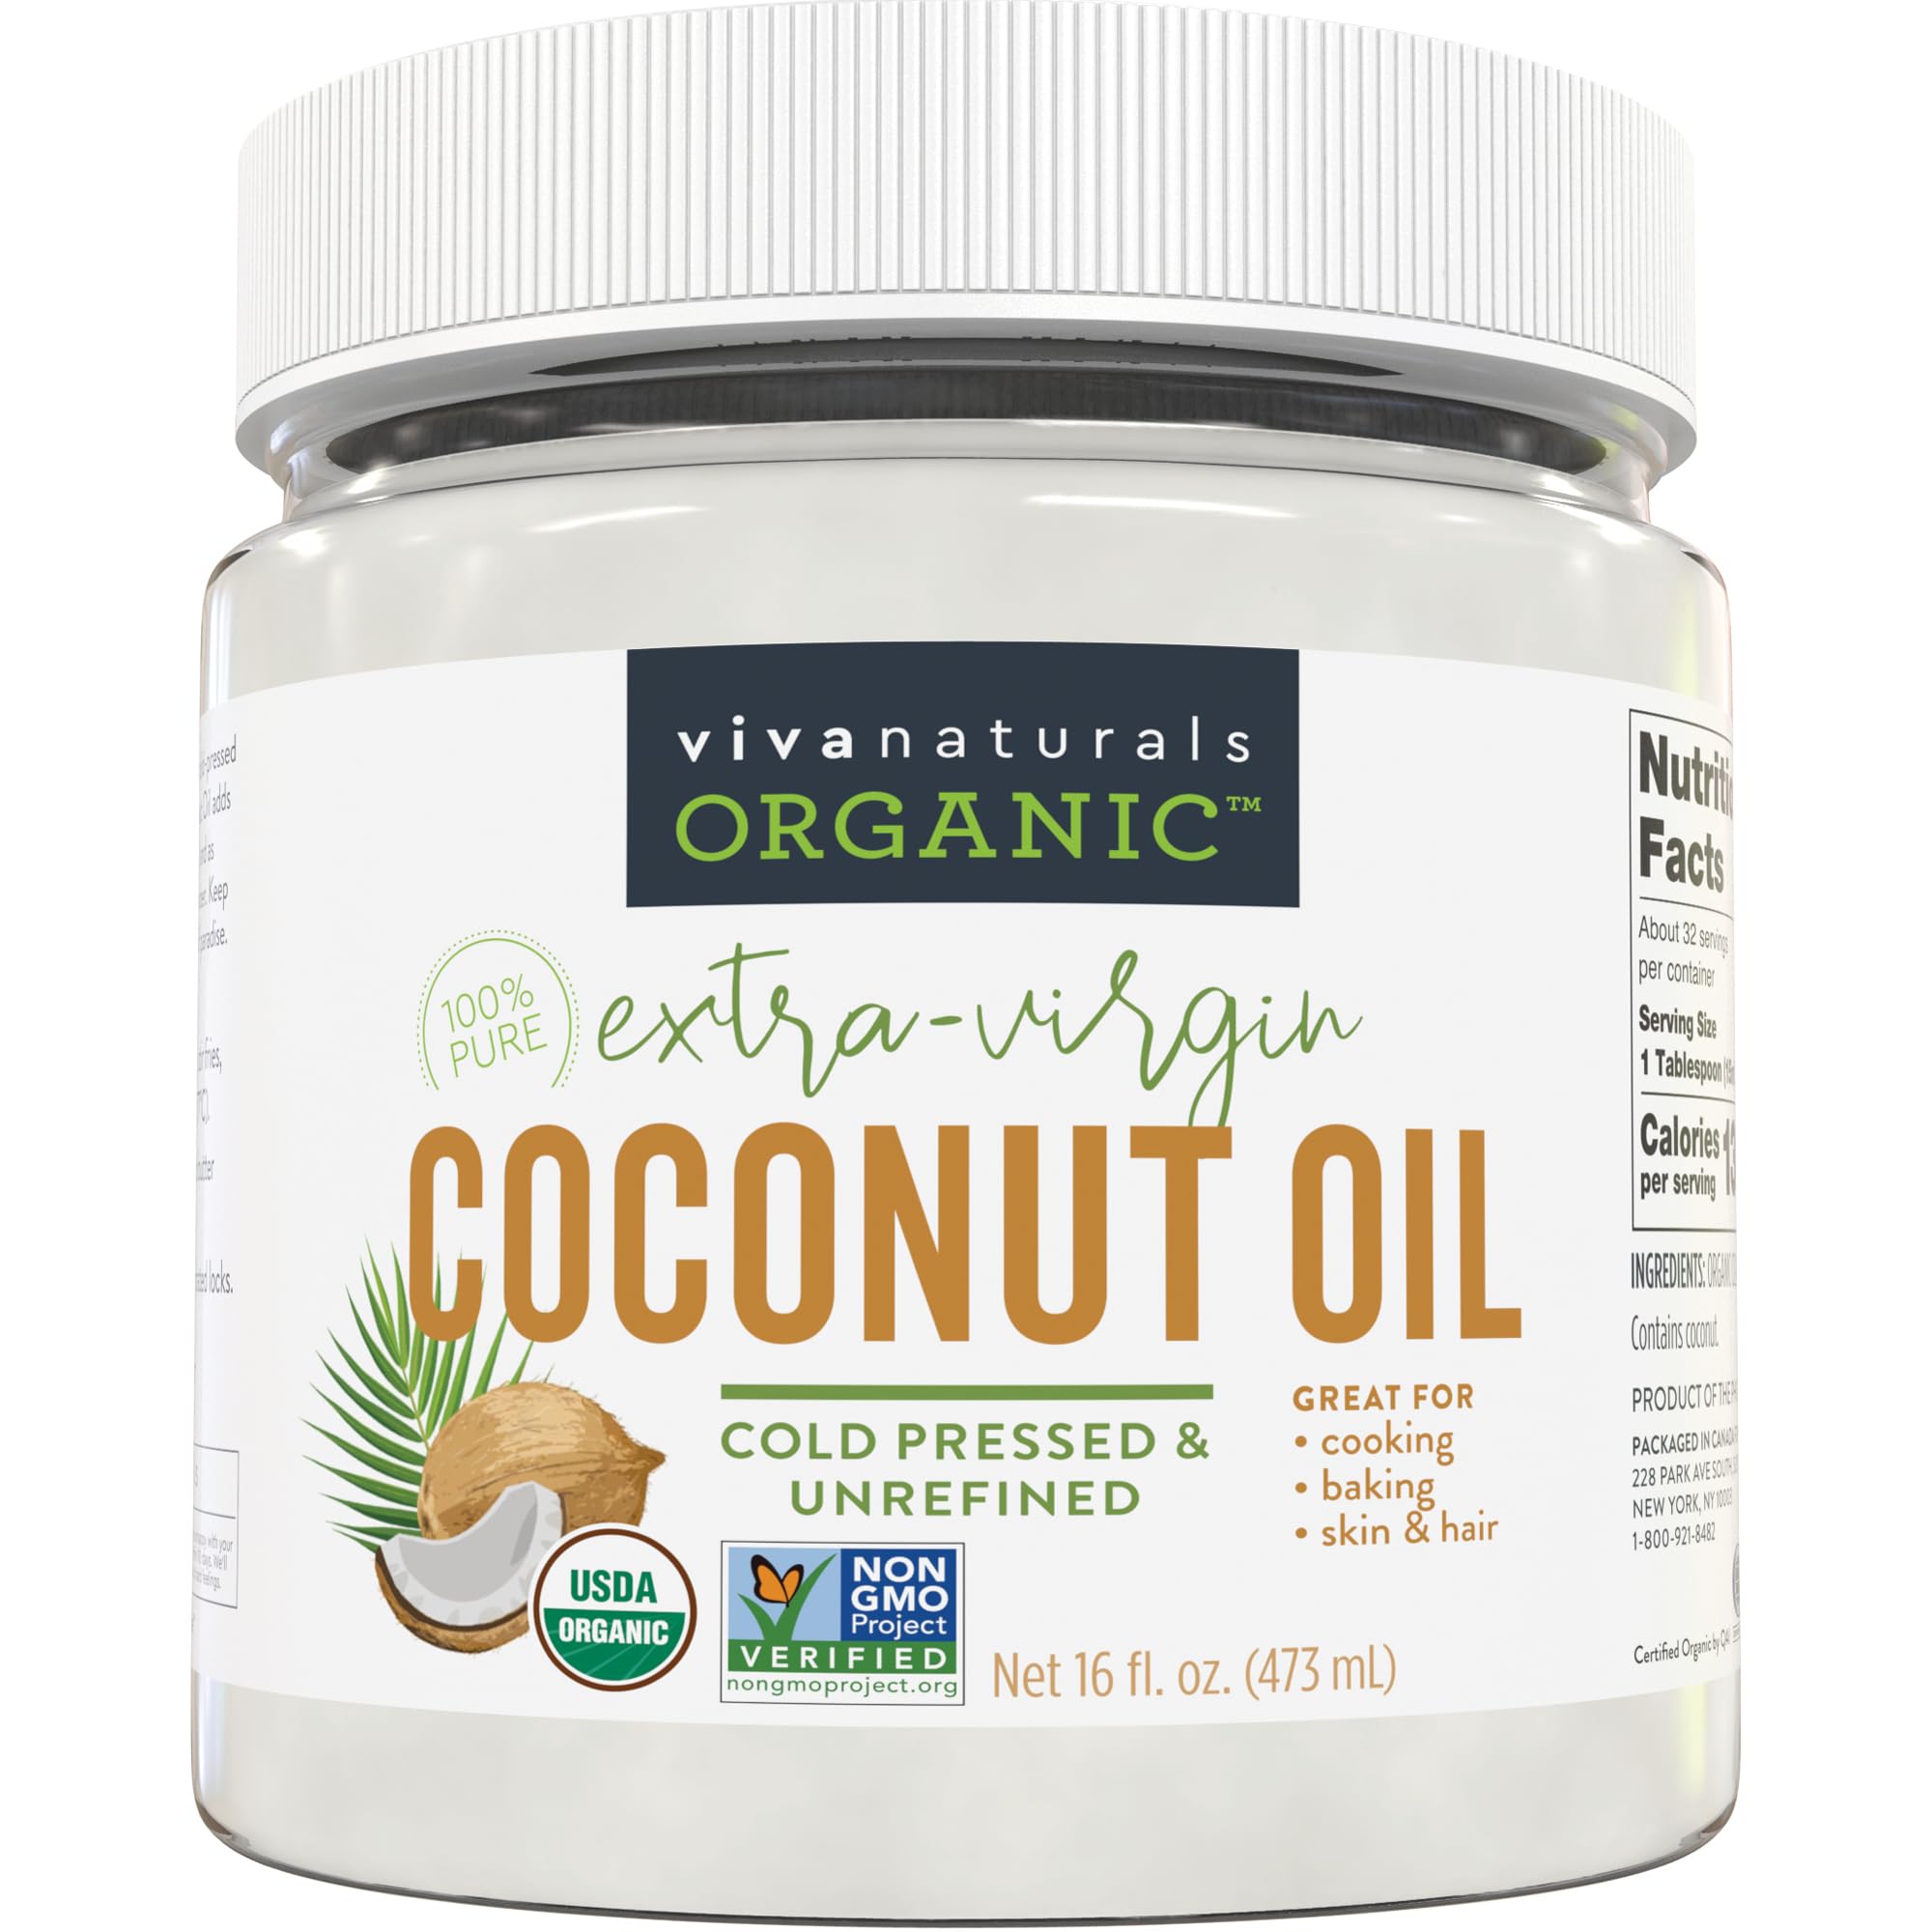 16-Oz Viva Naturals Organic Cold-Pressed Unrefined Coconut Oil $8.09 w/ S&S + Free Shipping w/ Prime or $35+